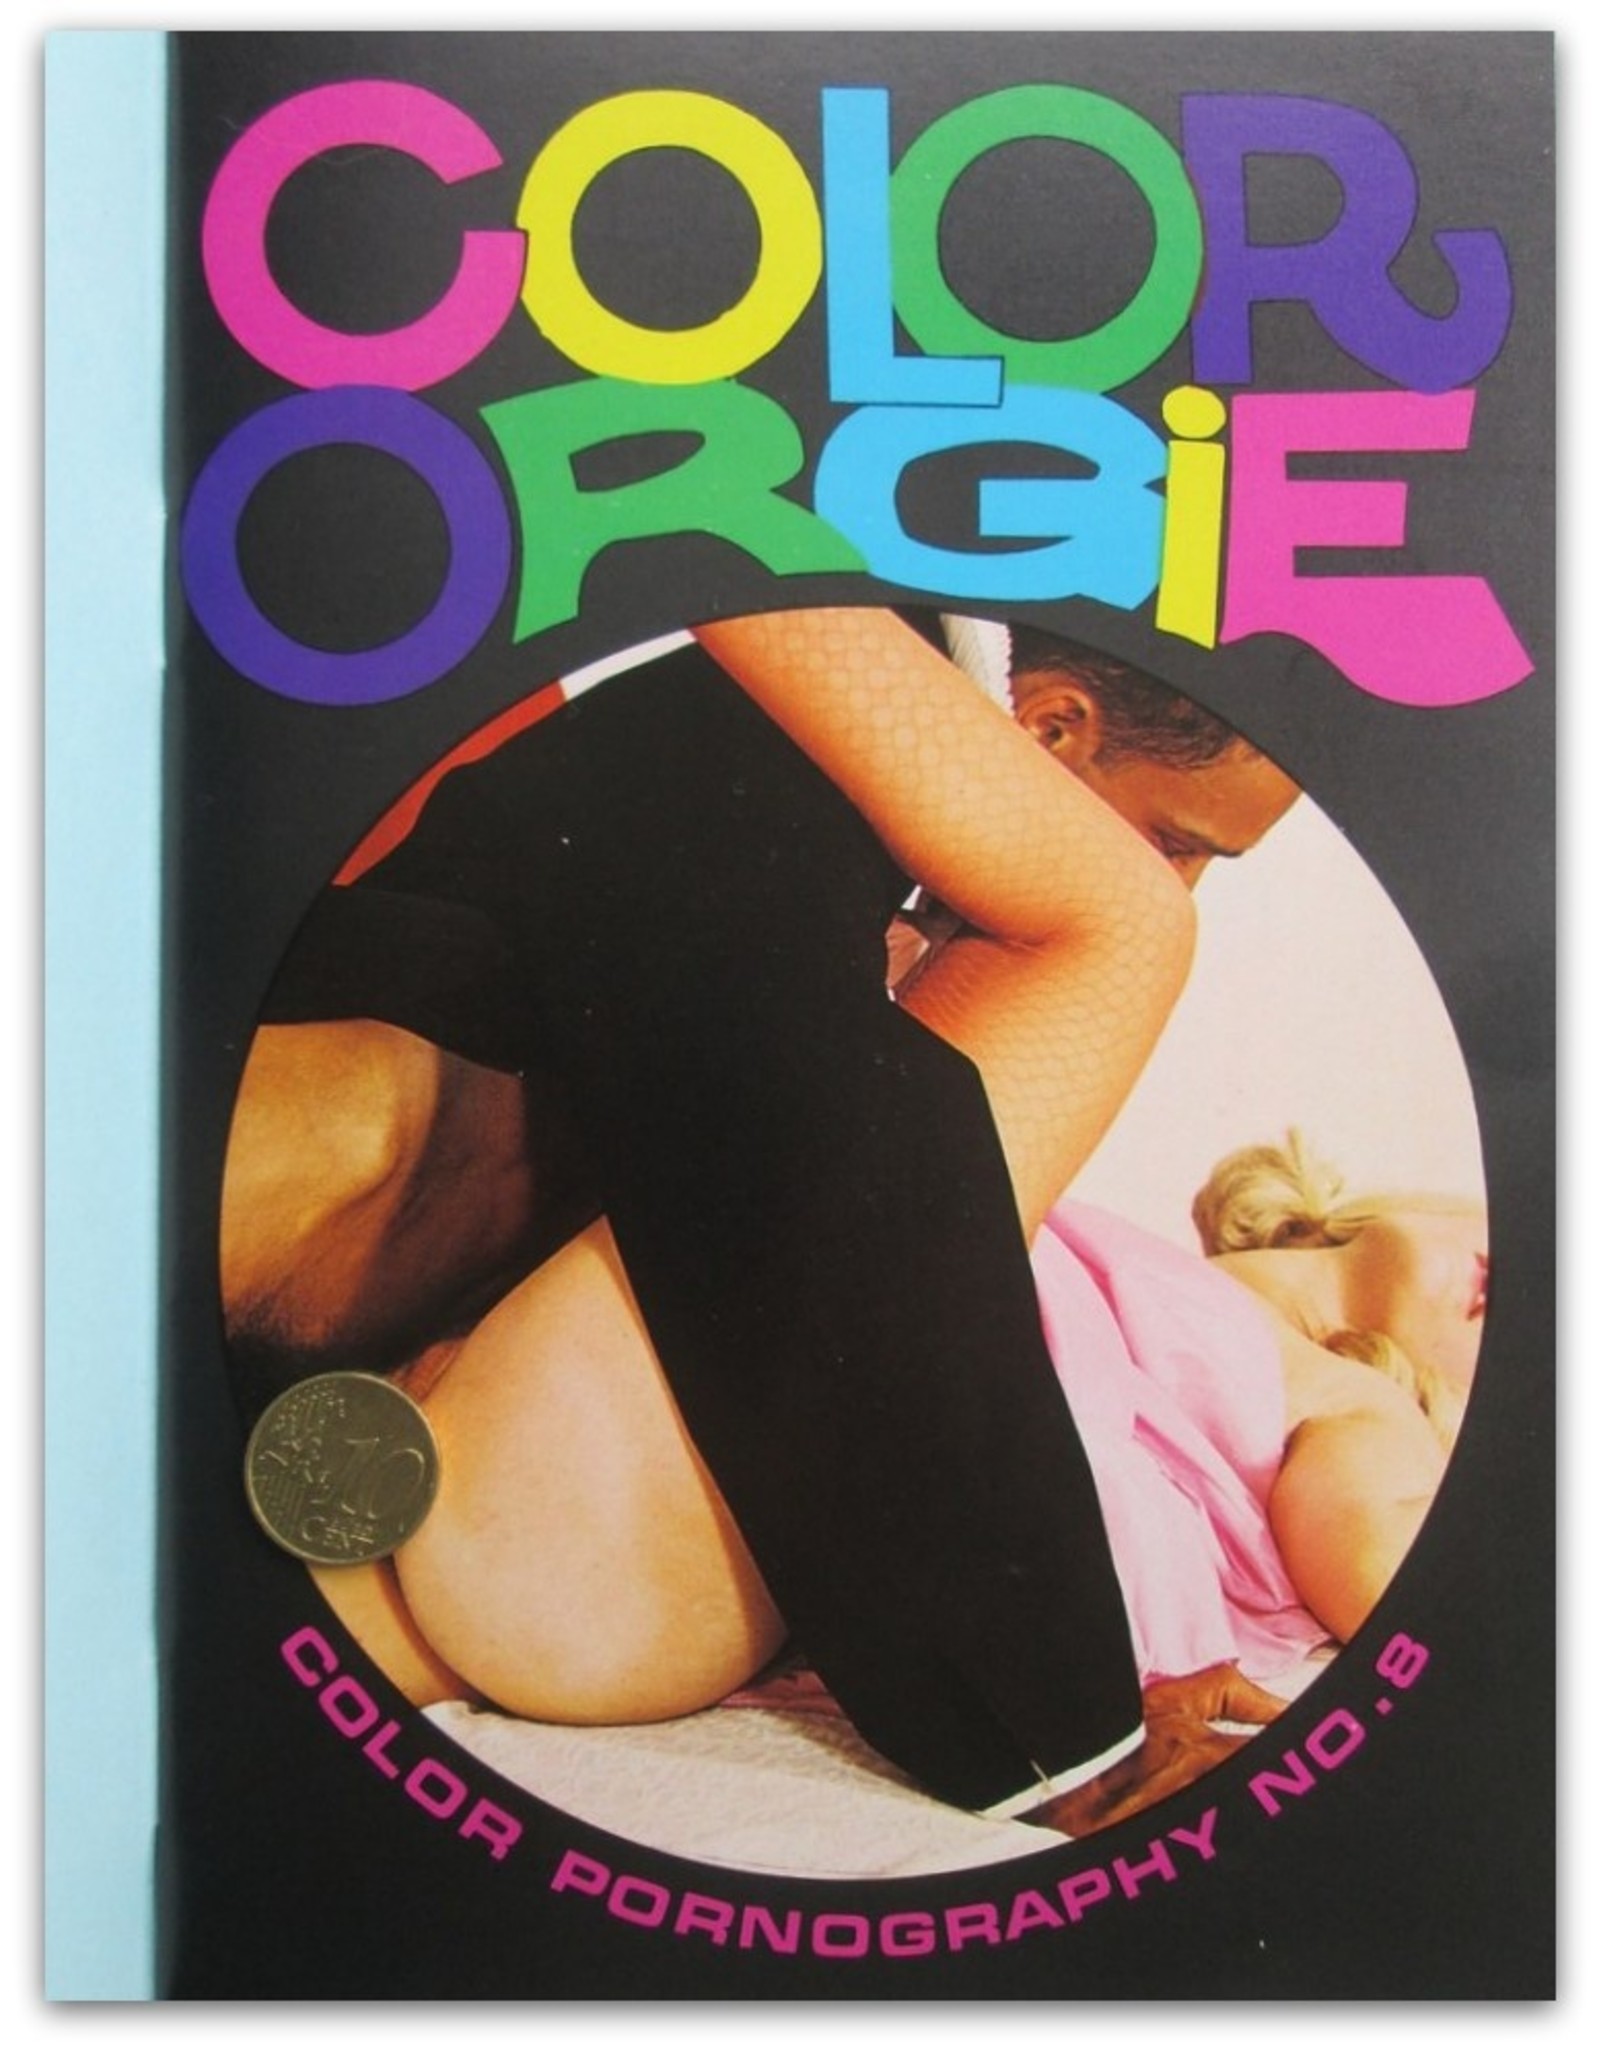 Tony Sørensen [ed.] - Color Orgie No. 8. Color Pornography